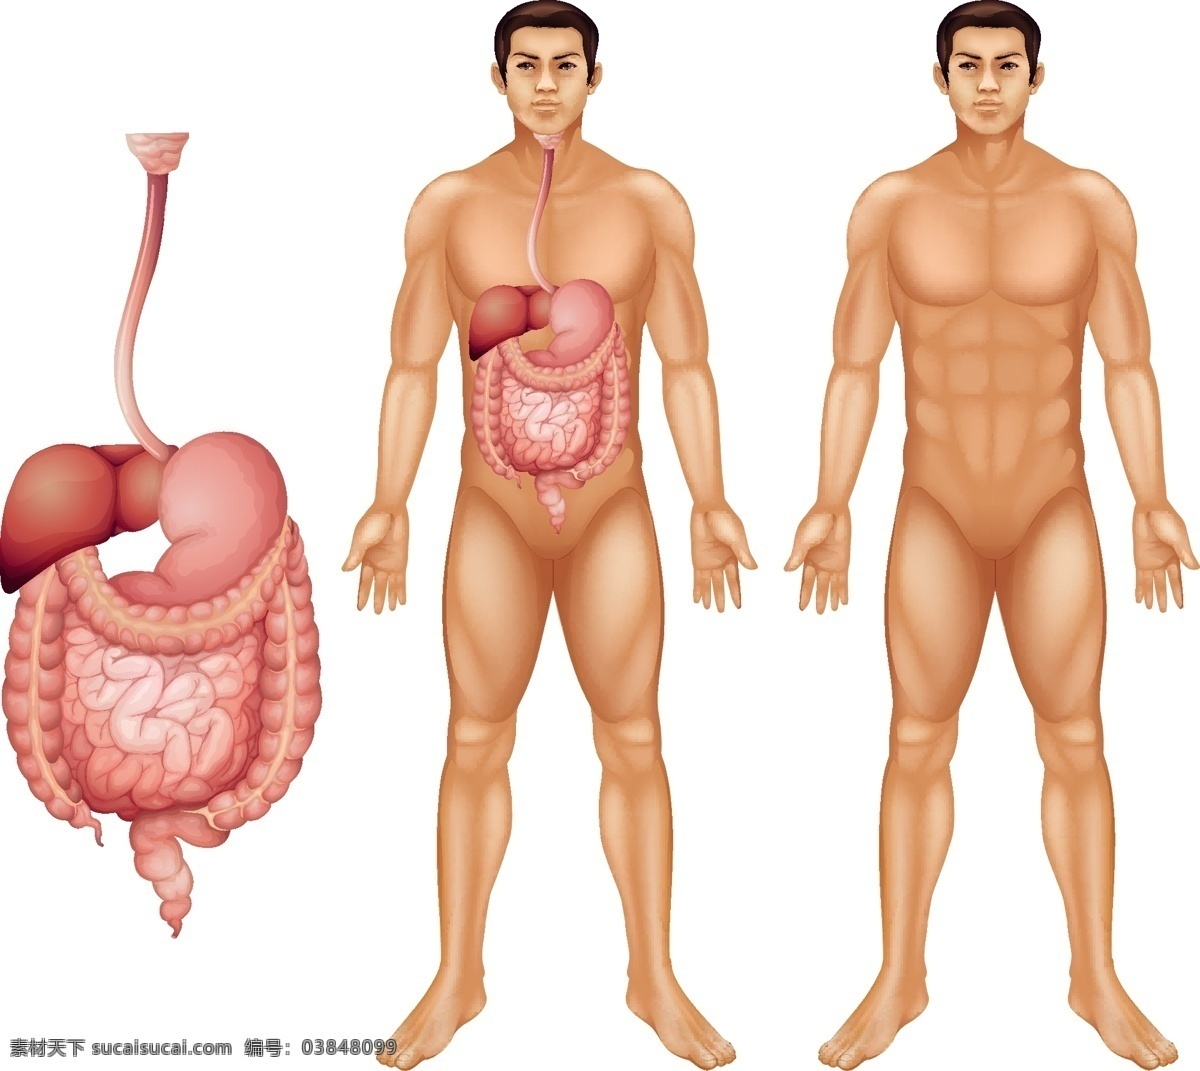 人体内脏 心脏 前列腺 胃 人体解剖图 肝脏 人体结构 人物 分层 生活百科 医疗保健